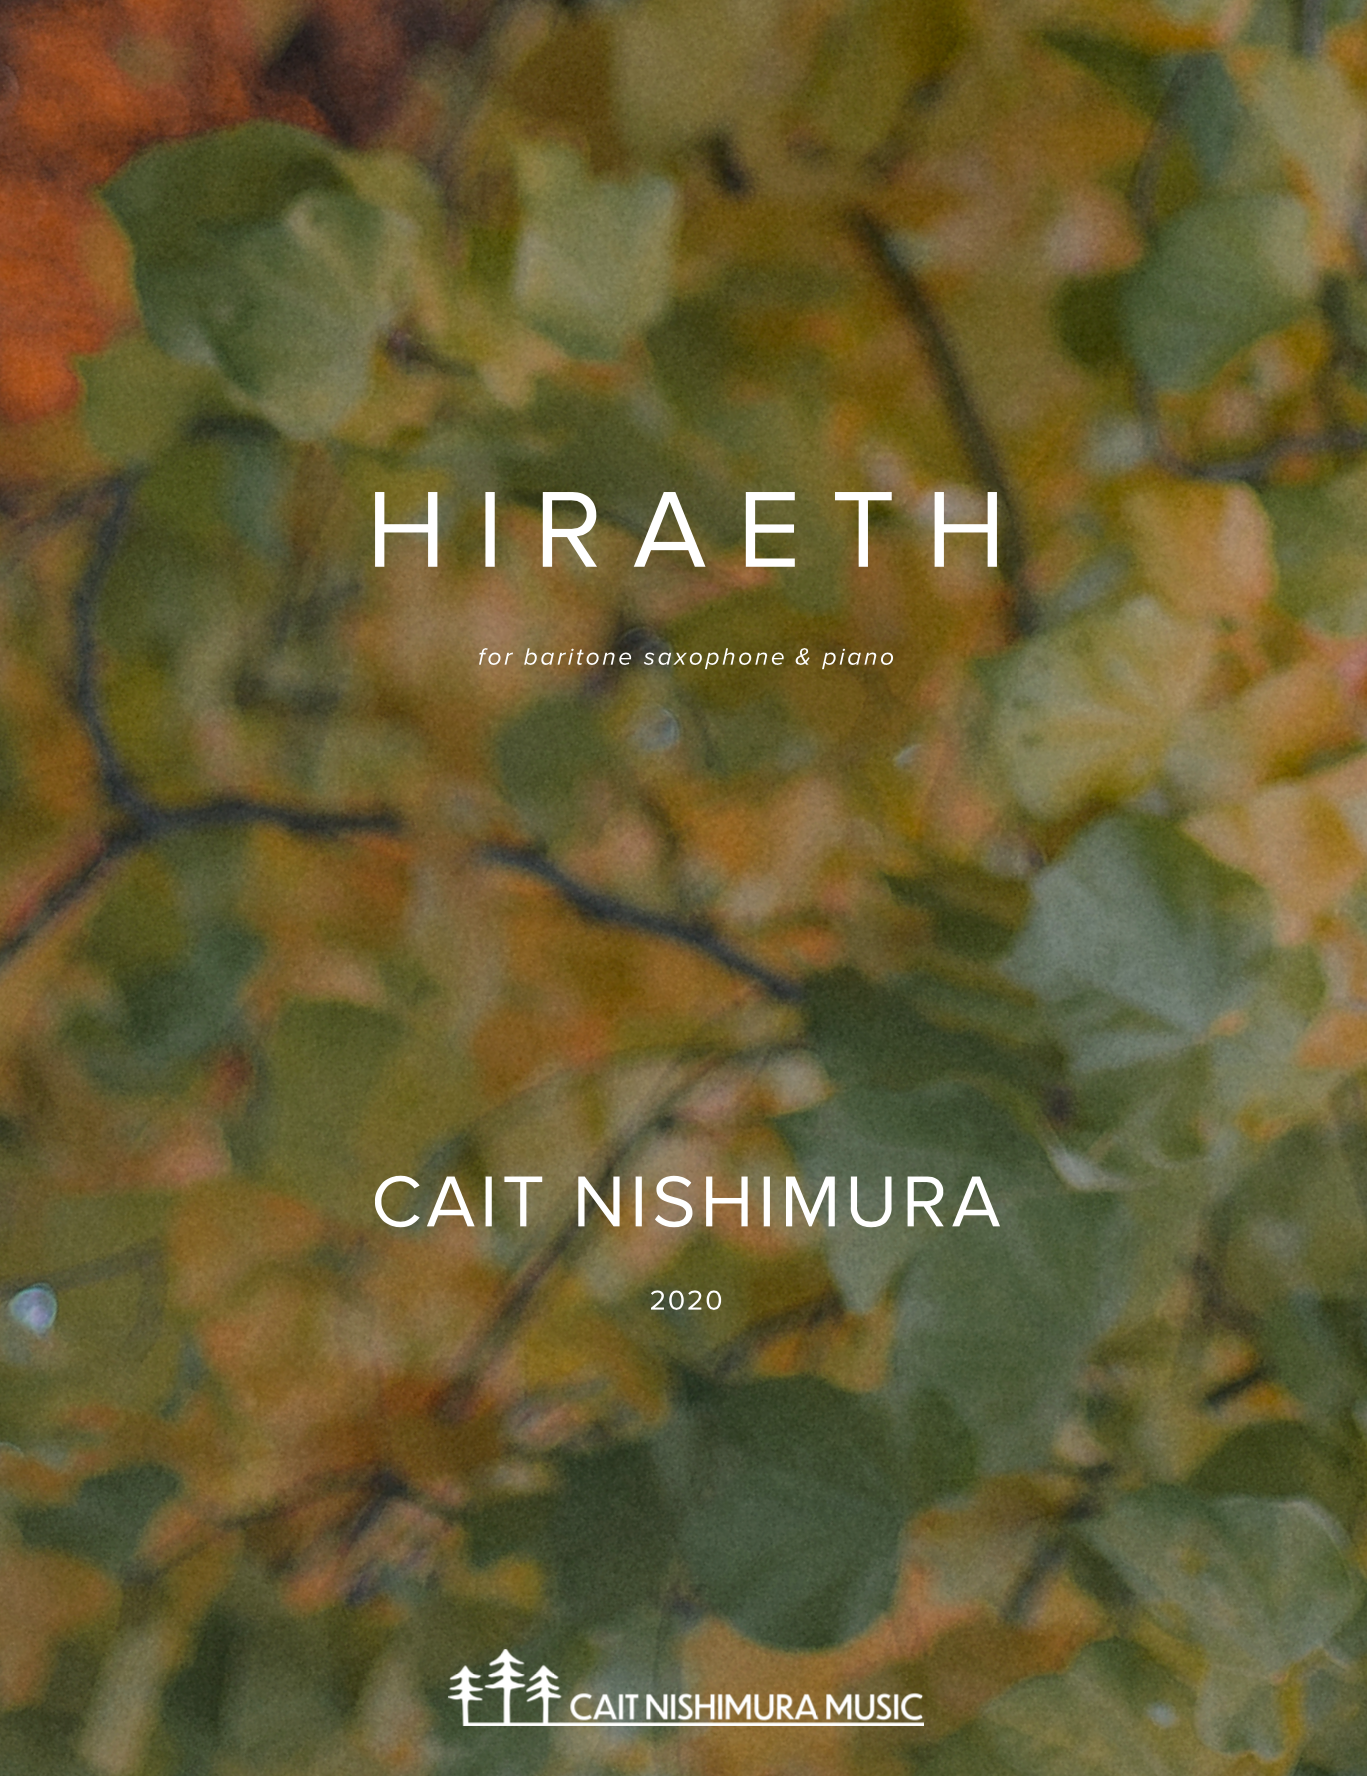 Hiraeth by Cait Nishimura